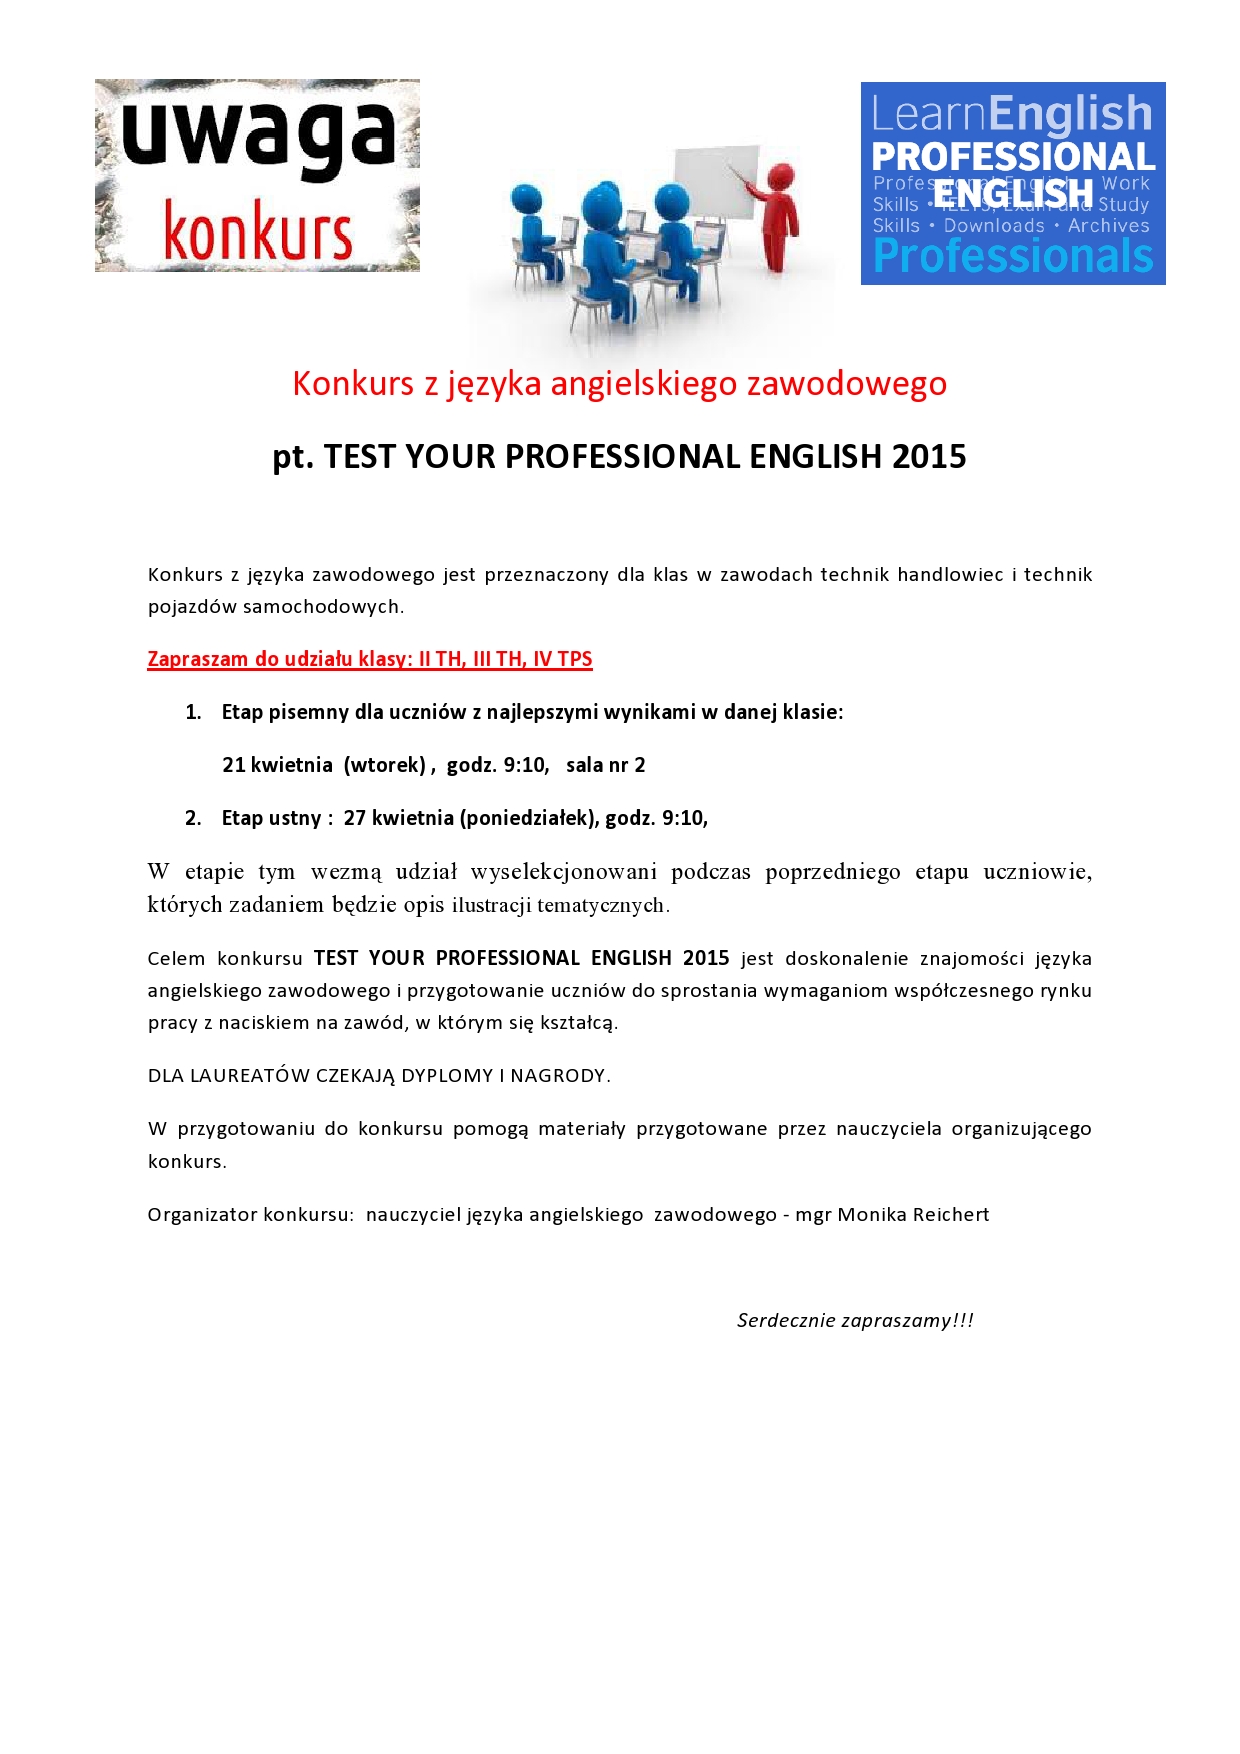 Konkurs z języka angielskiego zawodowego - test handlowiec 2015 1-page0001